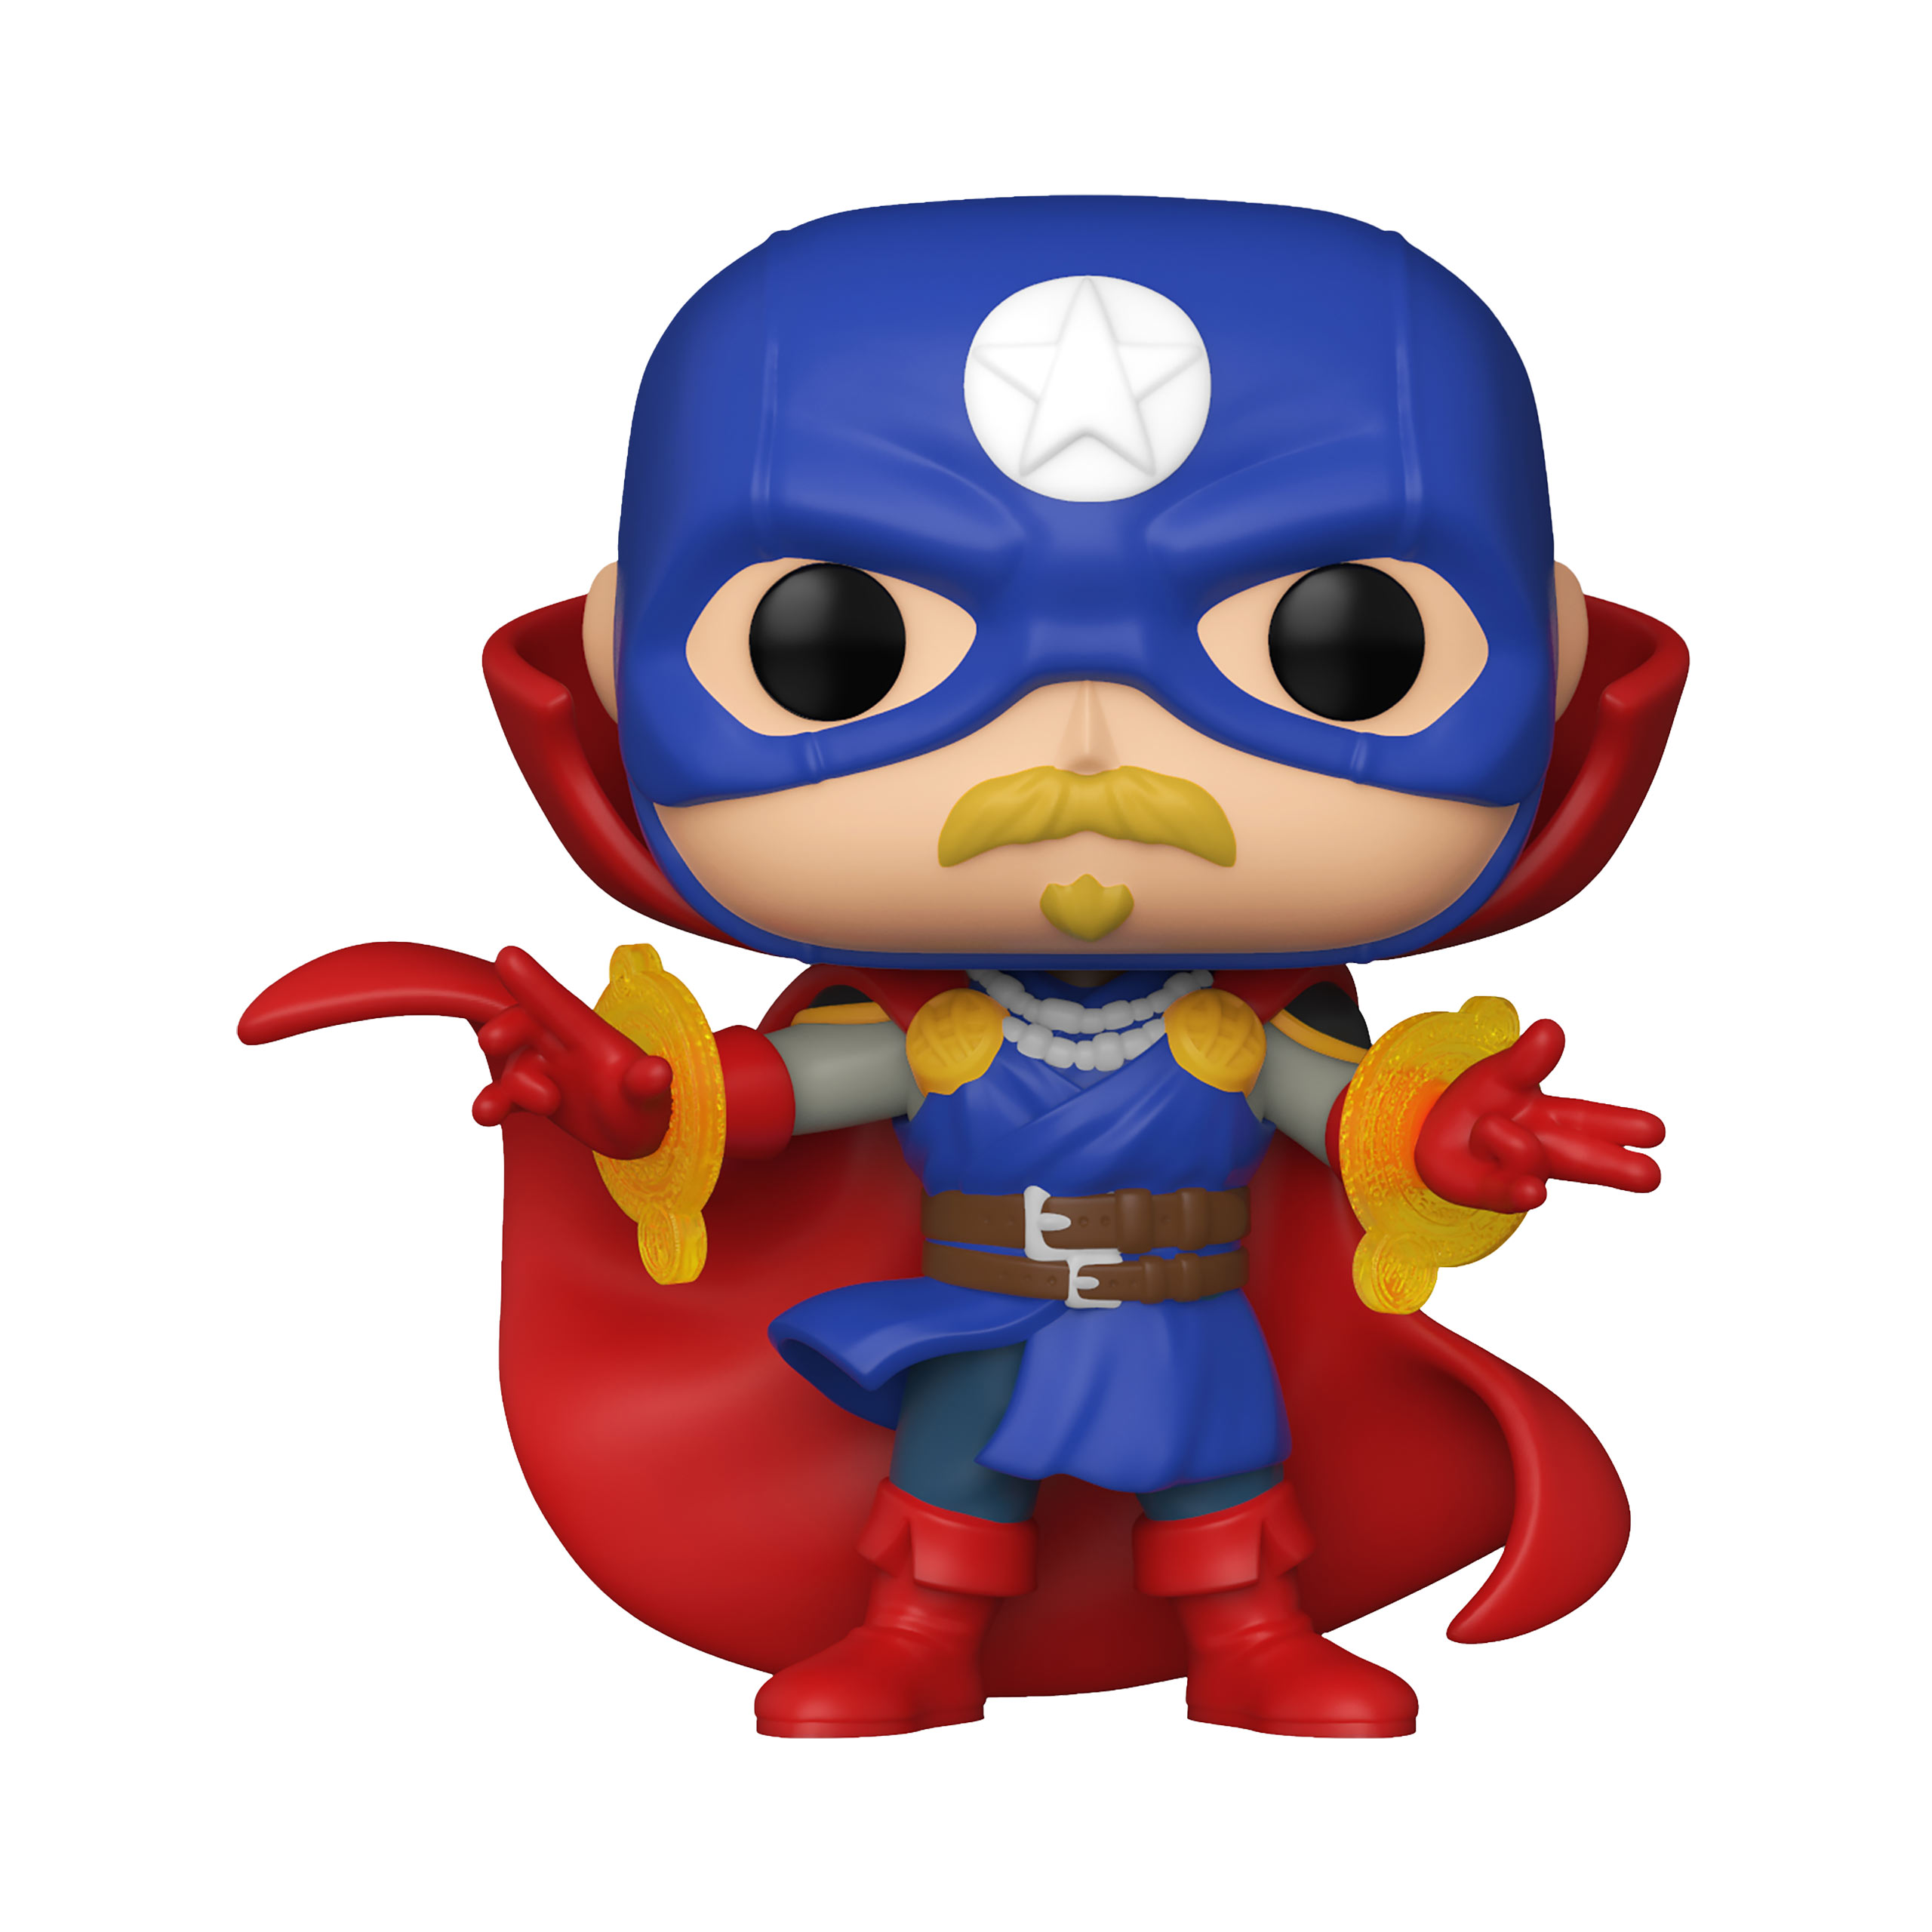 Captain America - Soldier Supreme Funko Pop Figure